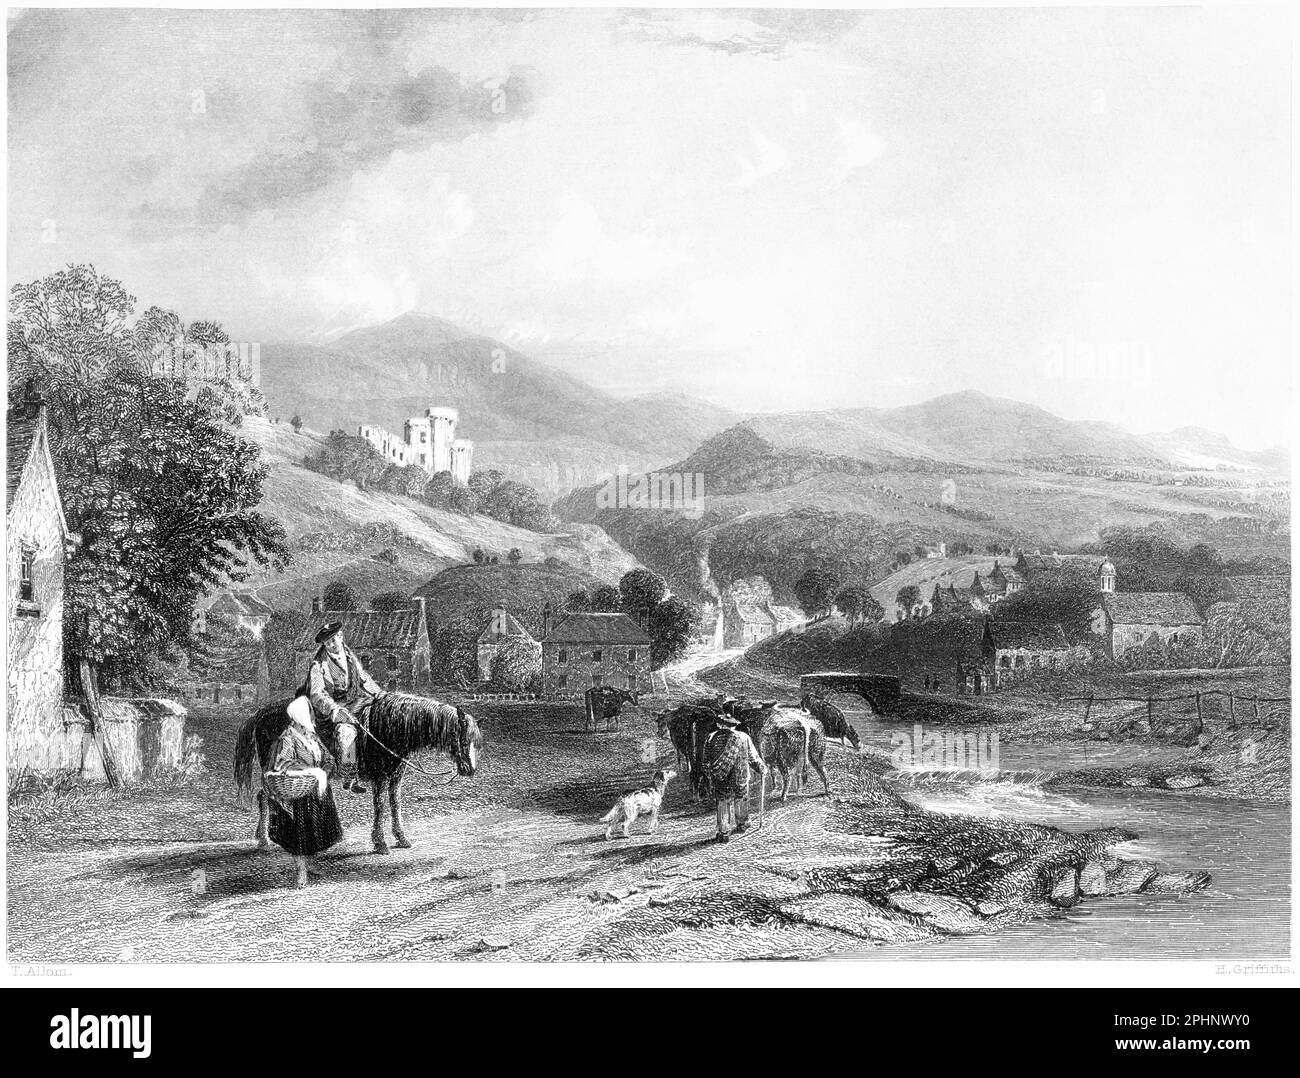 Eine Gravur von Castle Campbell aus dem Valley of Dollar, Perthshire, Schottland, Großbritannien, gescannt mit hoher Auflösung aus einem 1840 gedruckten Buch. Dieses Bild Stockfoto